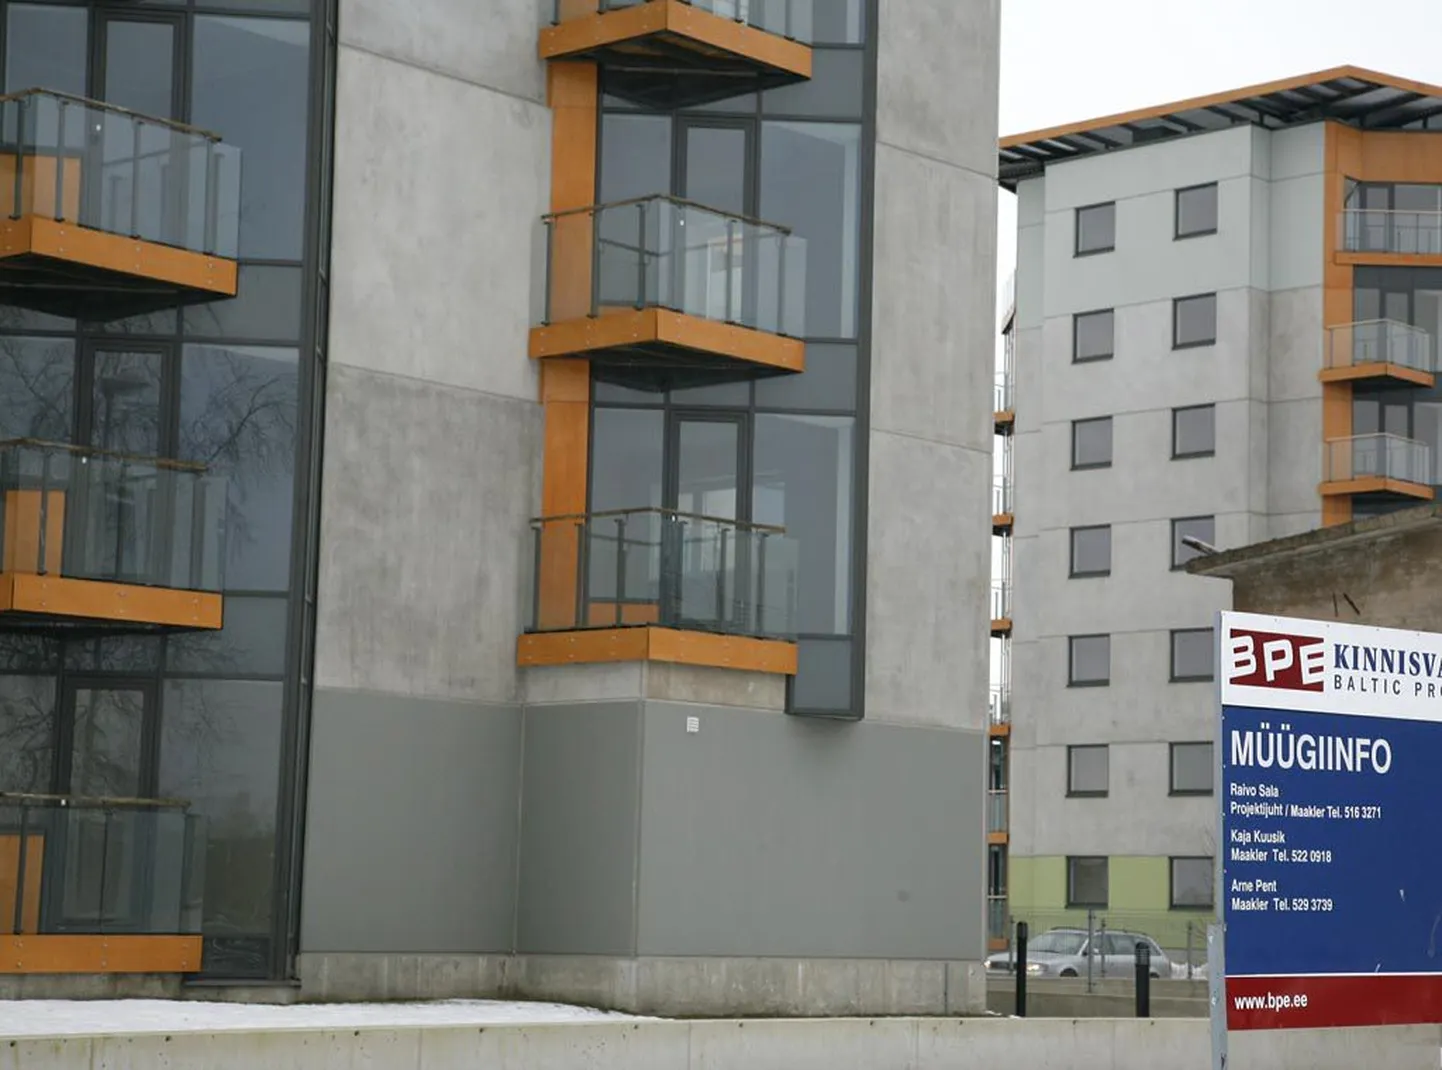 Kõige lahedamalt jagub tingimisruumi kinnisvaraturul. City24 andmetel oli Pärnu korterite keskmine pakkumishind detsembris pea 16 000 krooni ruutmeetri eest, samal ajal oli keskmine müügihind maa-ameti andmeil 12 000 krooni ruutmeetrilt.